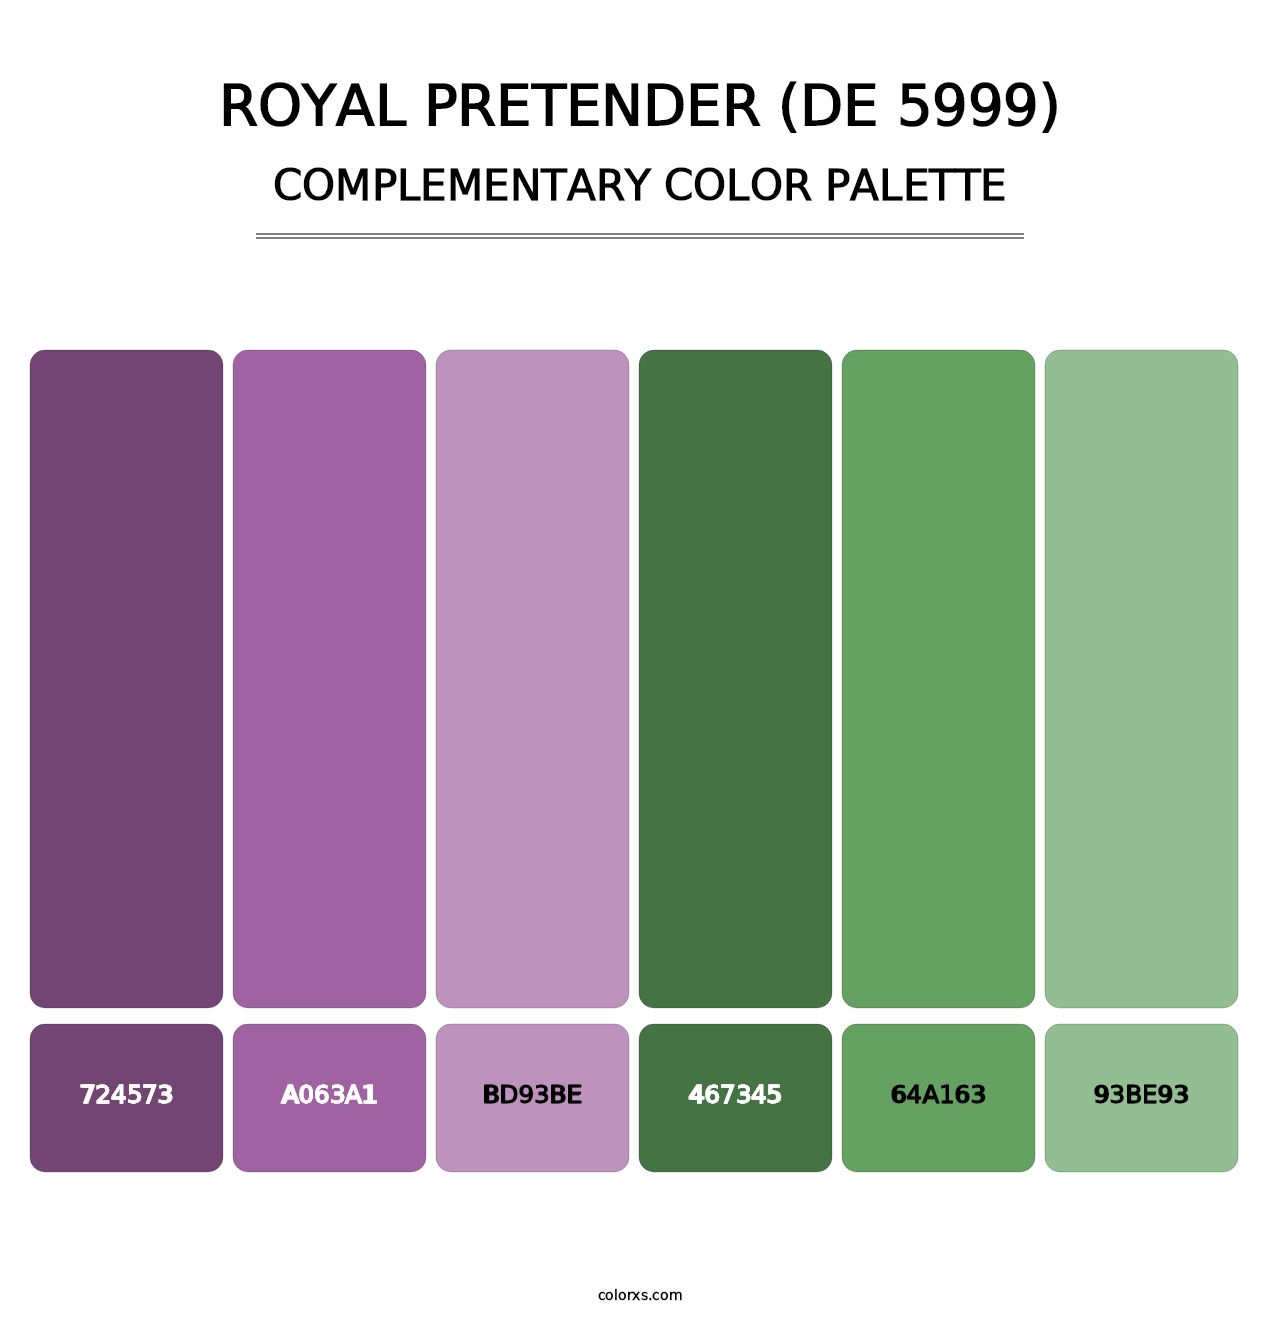 Royal Pretender (DE 5999) - Complementary Color Palette